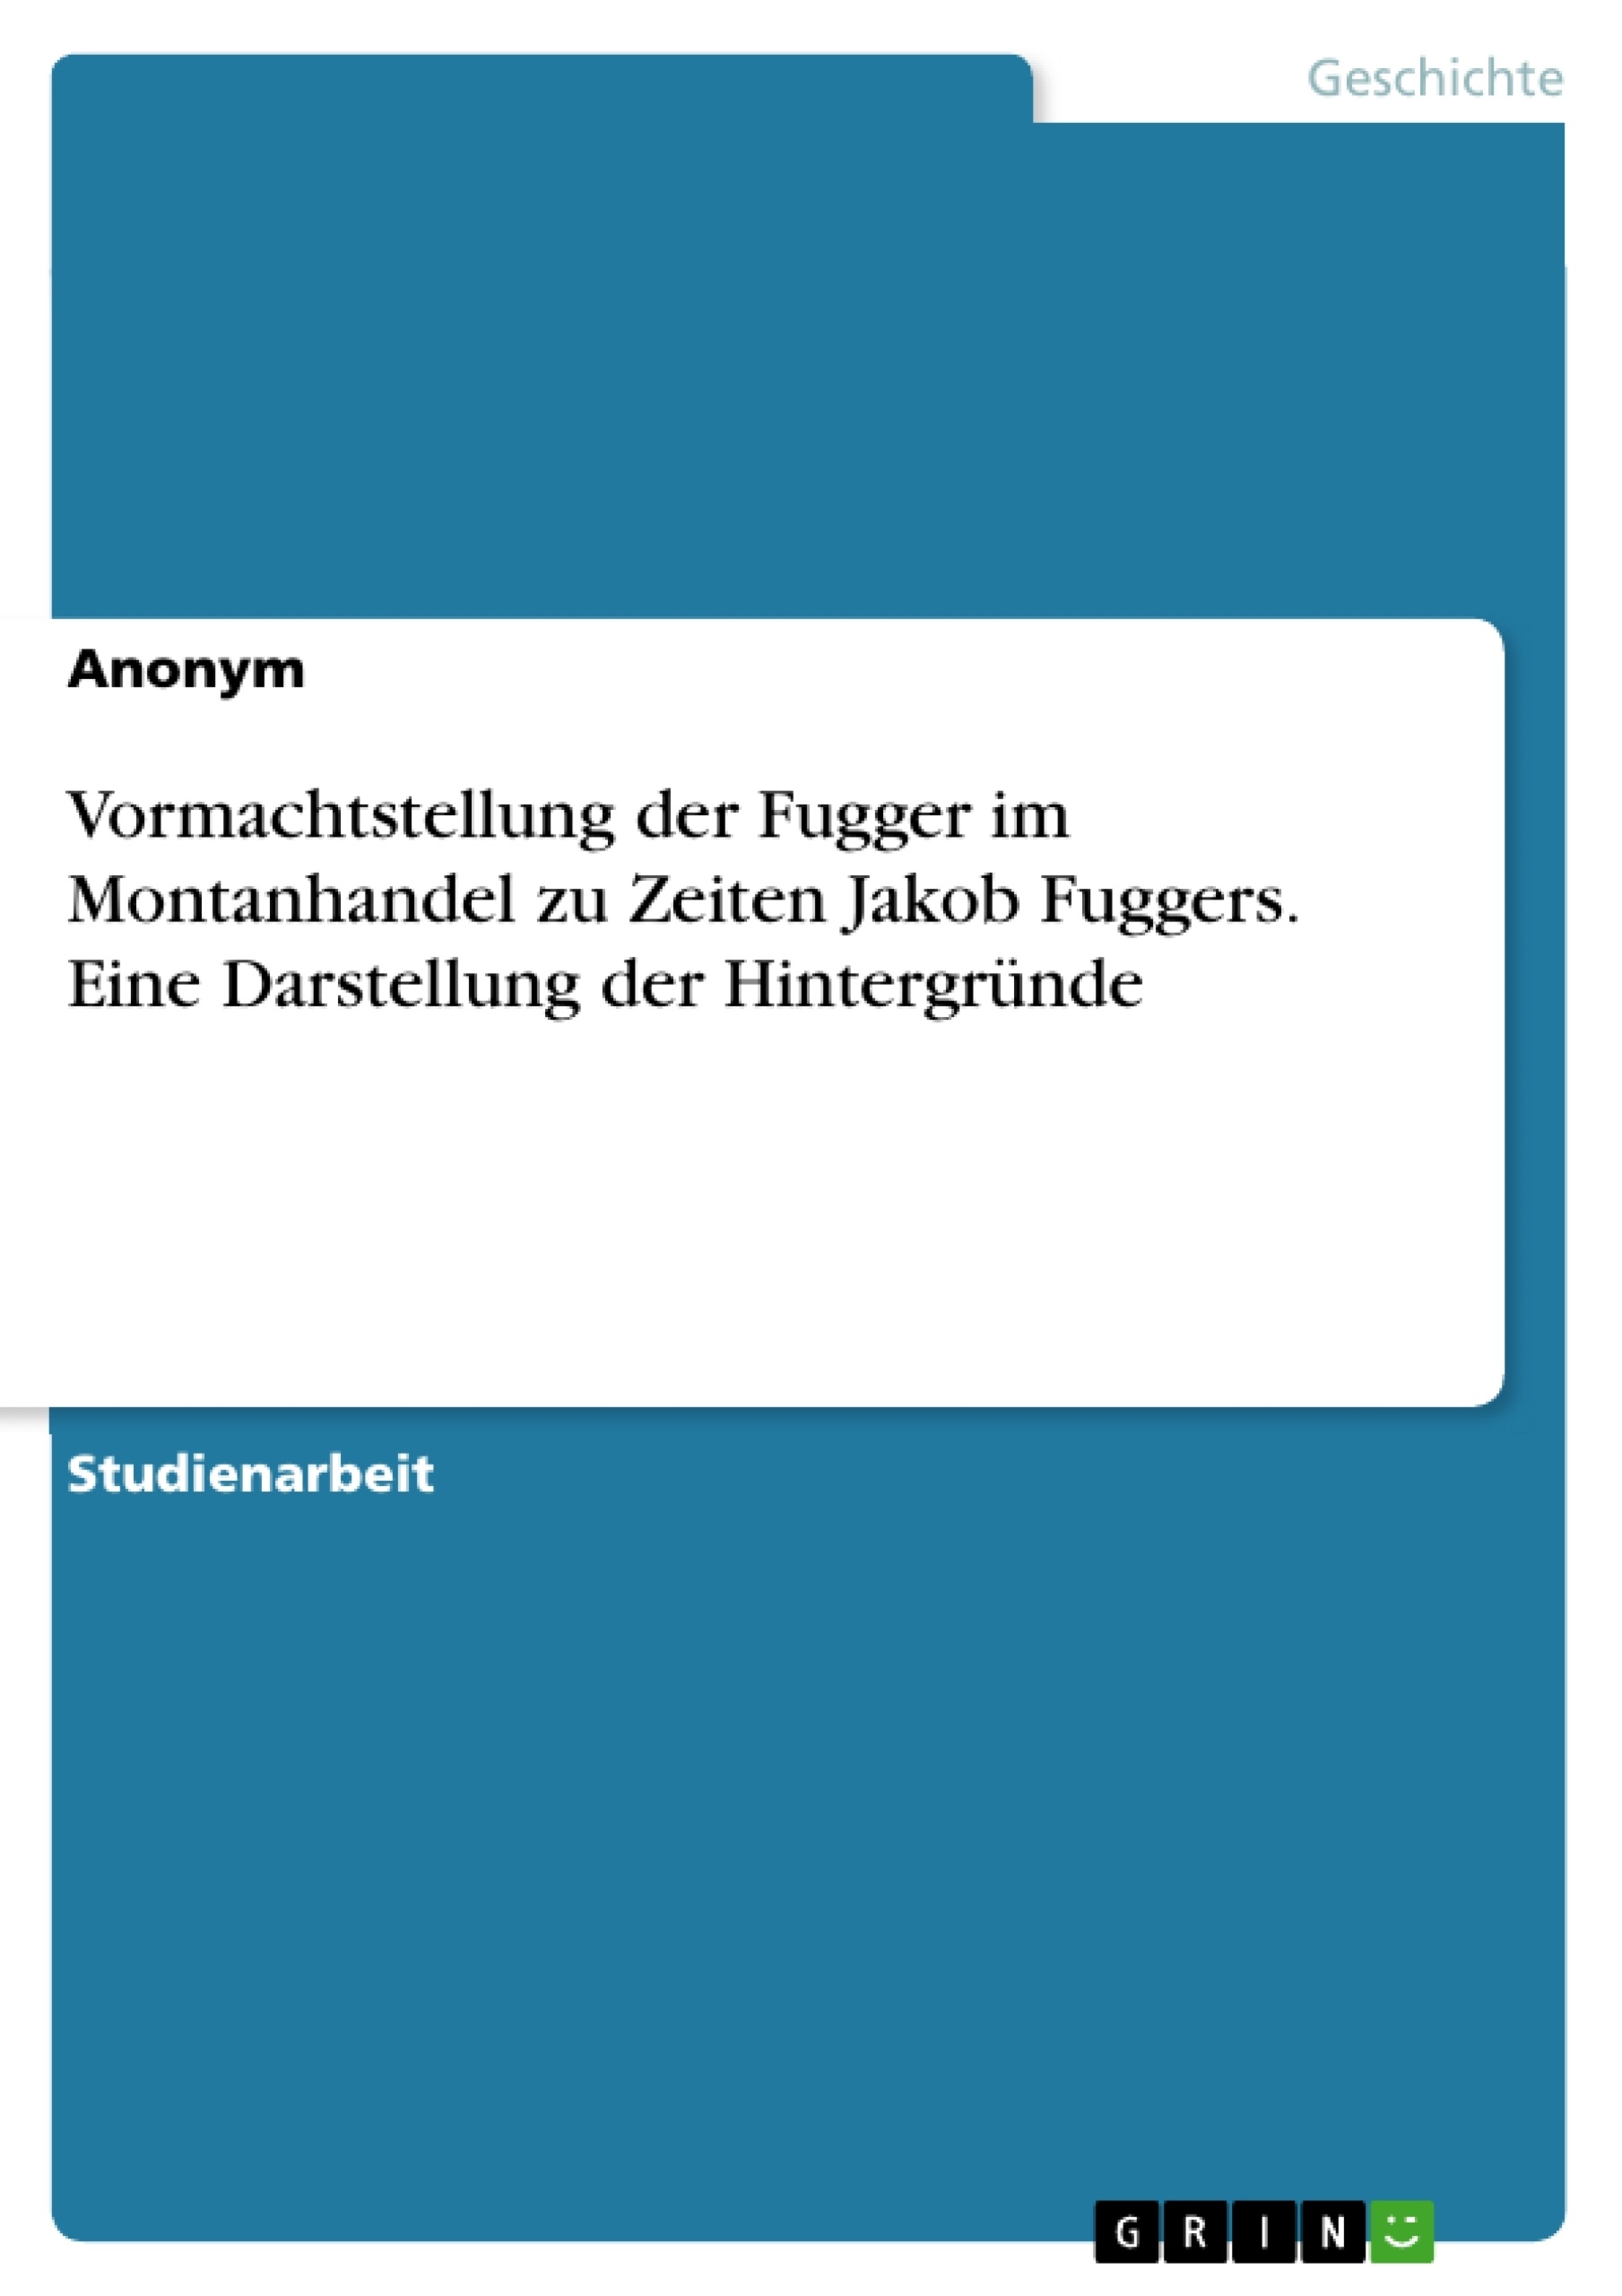 Titel: Vormachtstellung der Fugger im Montanhandel zu Zeiten Jakob Fuggers. Eine Darstellung der Hintergründe